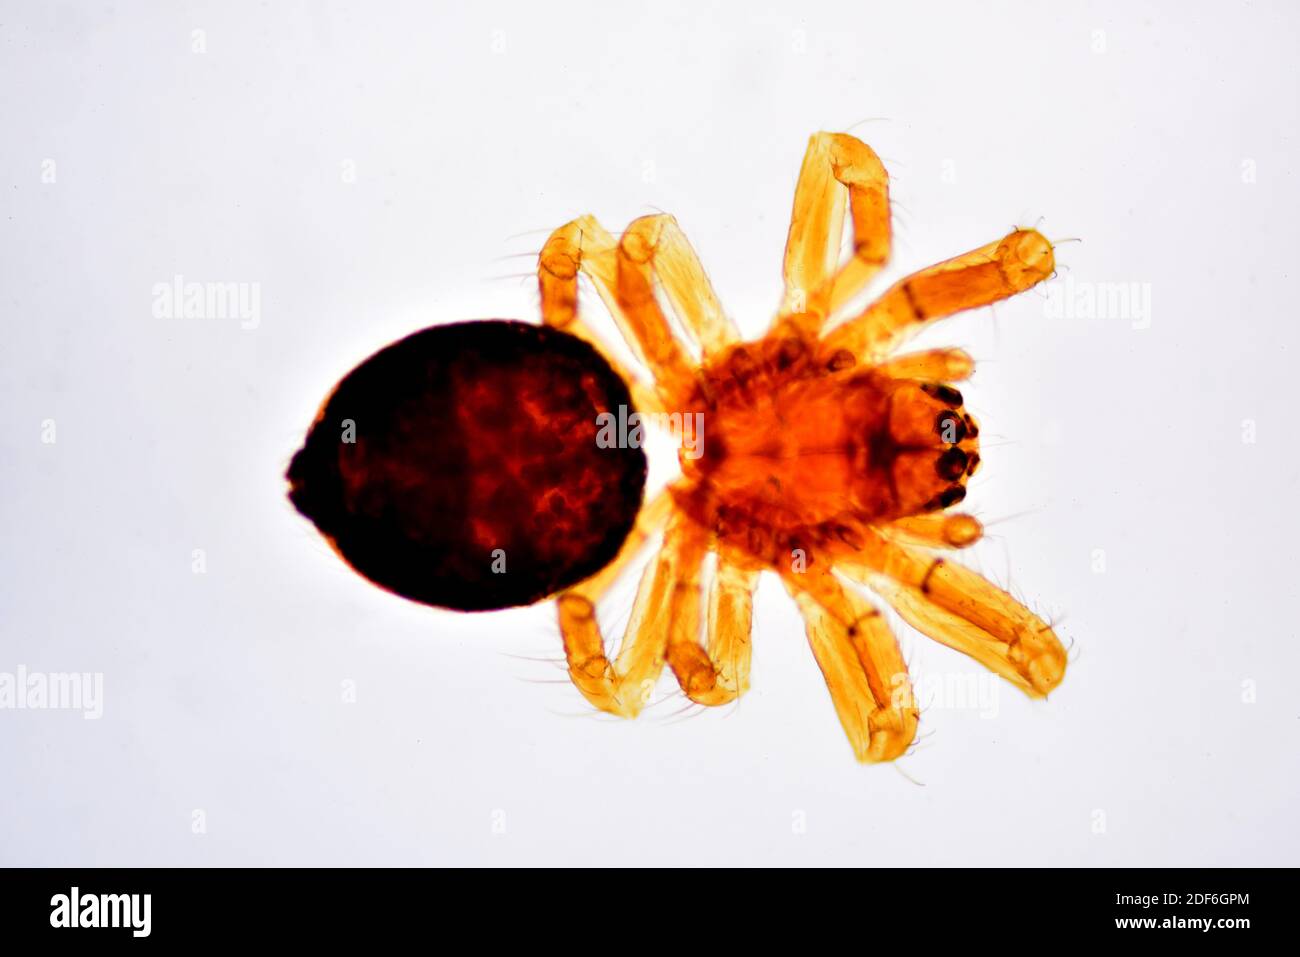 Petit échantillon d'araignée complet, vue dorsale. Microscope optique X40. Banque D'Images